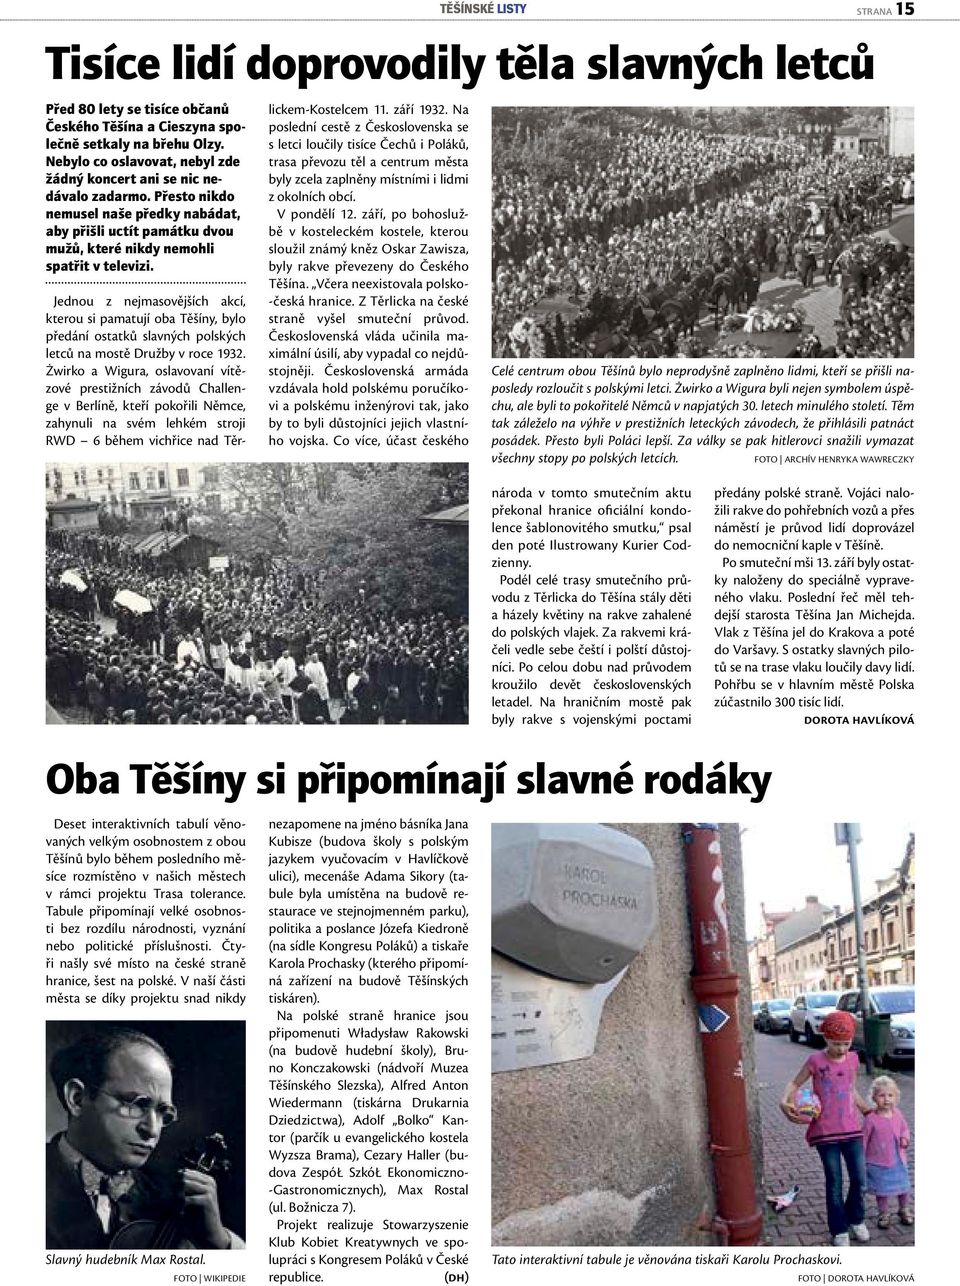 Jednou z nejmsovějších kcí, kterou si mtují ob Těšíny, bylo ředání osttků slvných olských letců n mostě Družby v roce 1932.